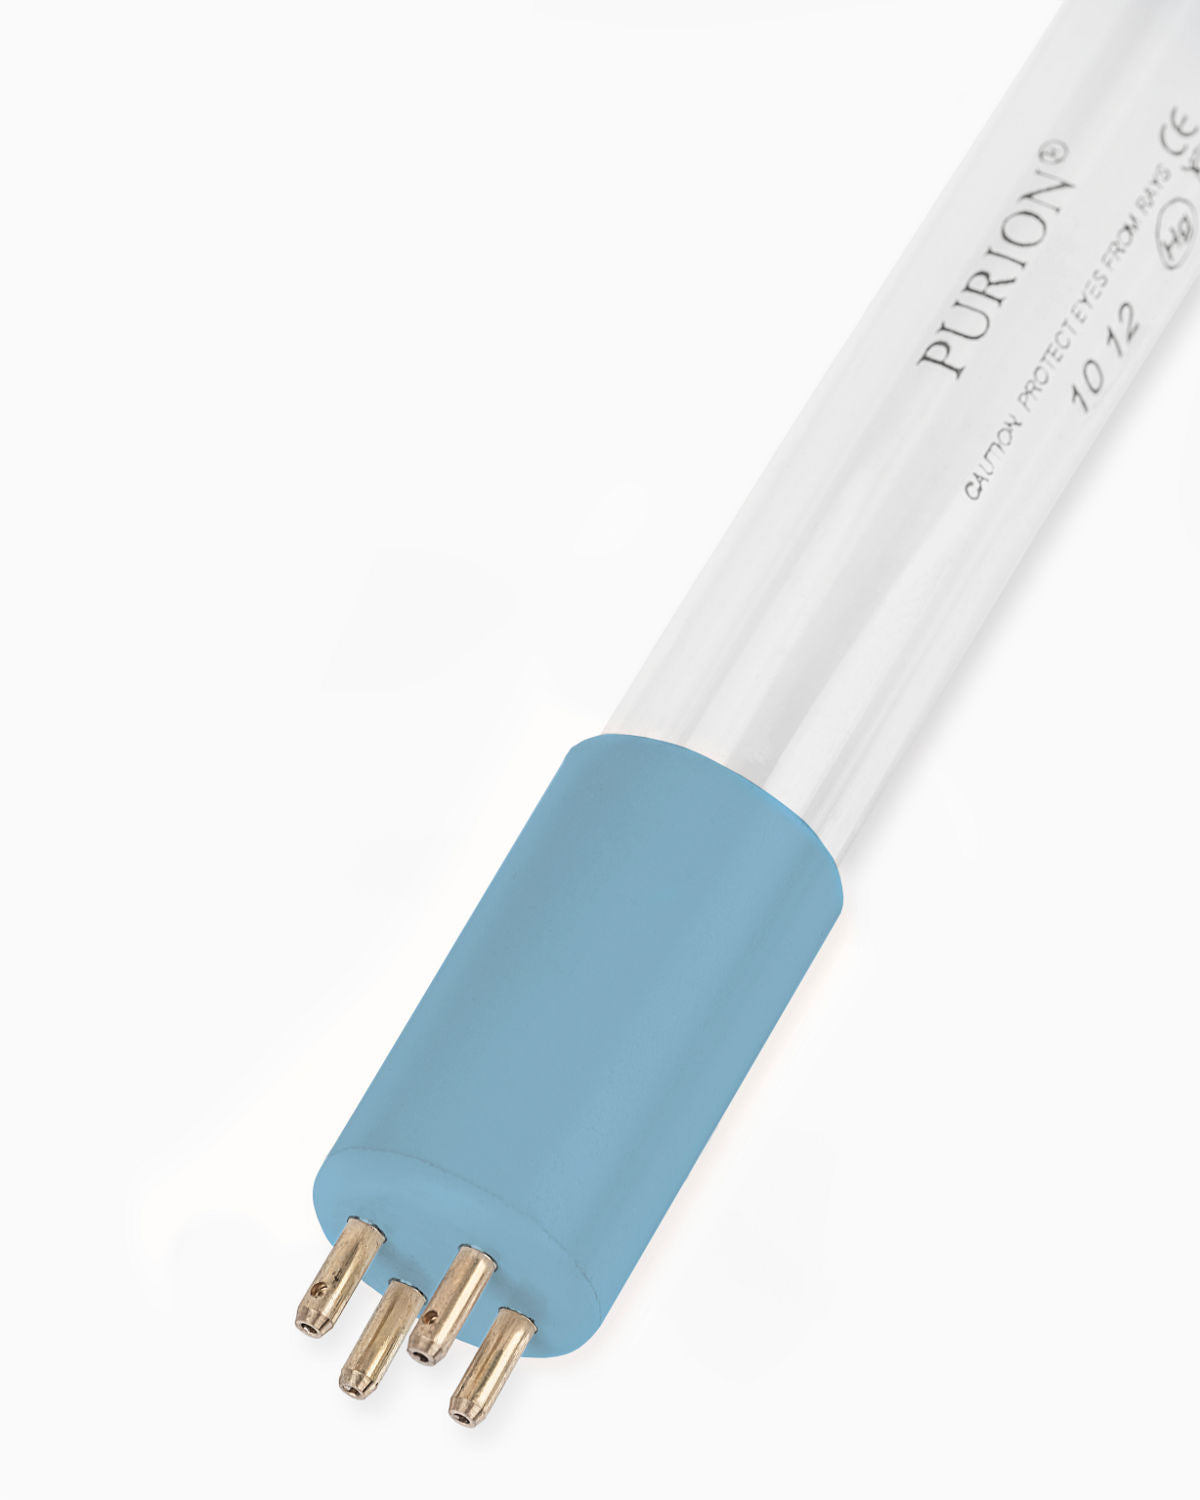 Eine PURION 500 110 - 240 V AC OTC-Lichtröhre auf weißem Hintergrund für Desinfektionsanlagen, hergestellt von UV Concept GmbH.